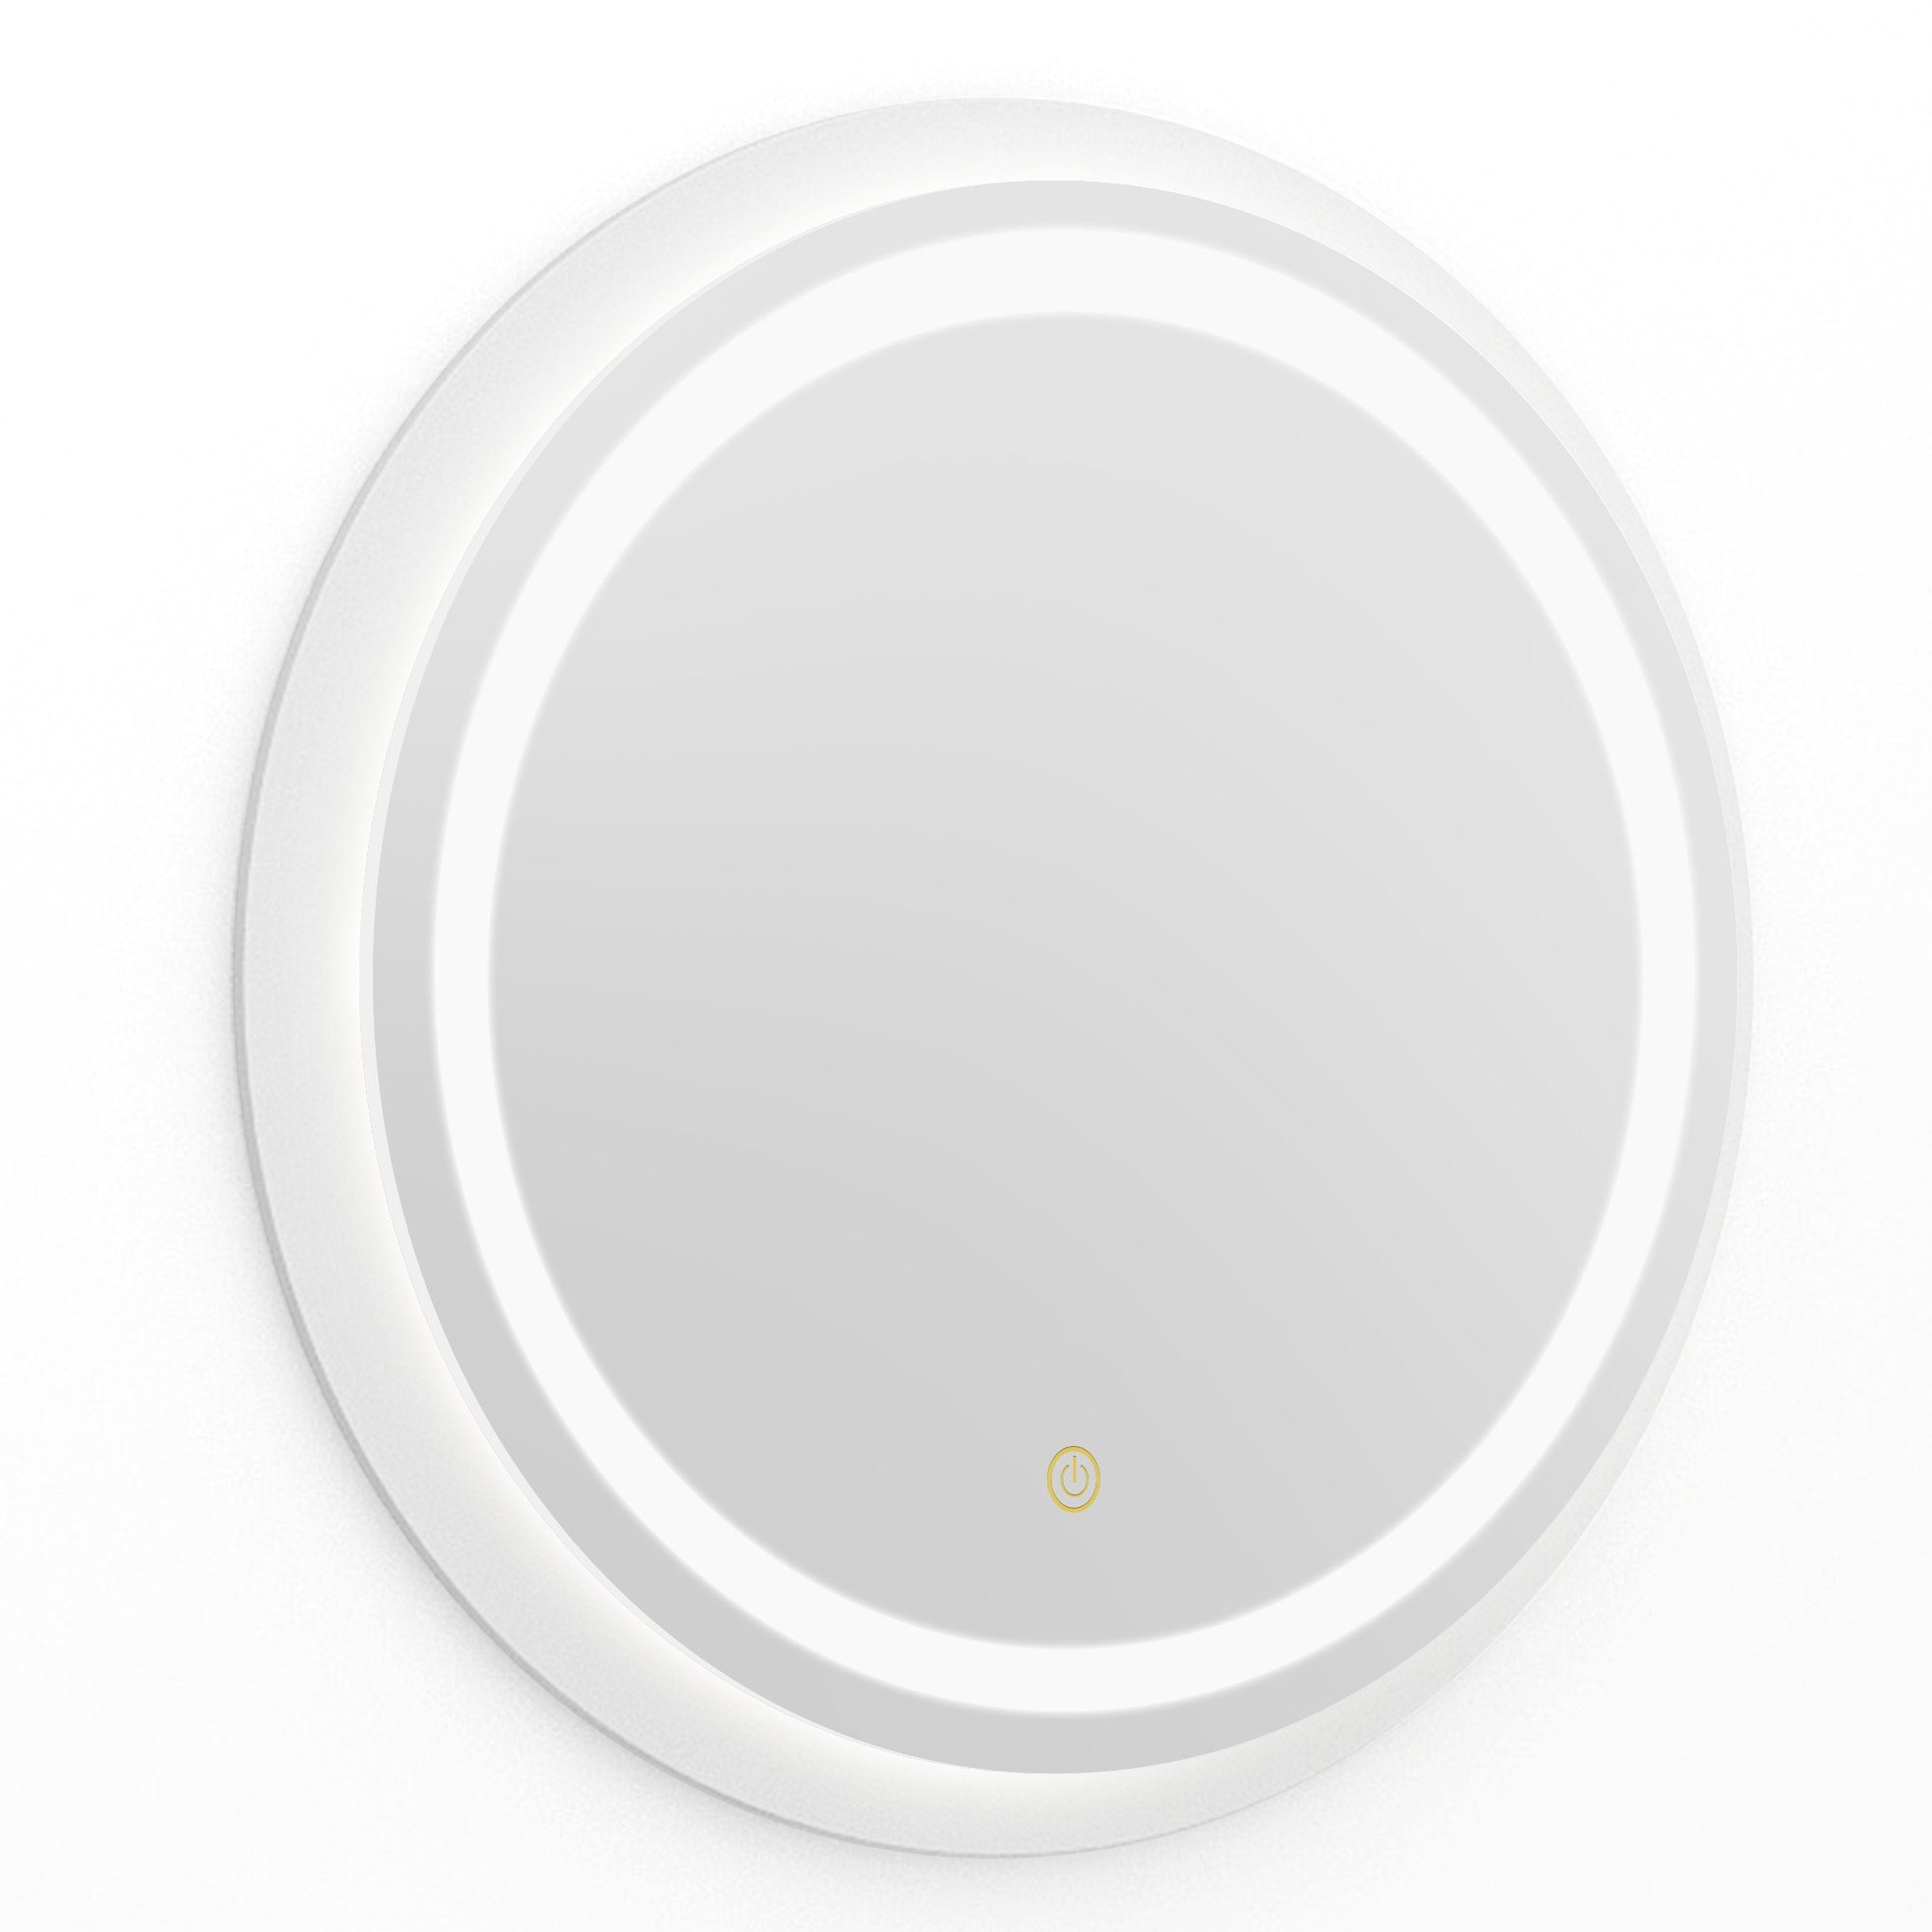 Dedom Badspiegel Kosmetikspiegel, LED-Spiegel 54x54CM, Touch-Schalter Spiegel, Make-up Wasserdicht mit